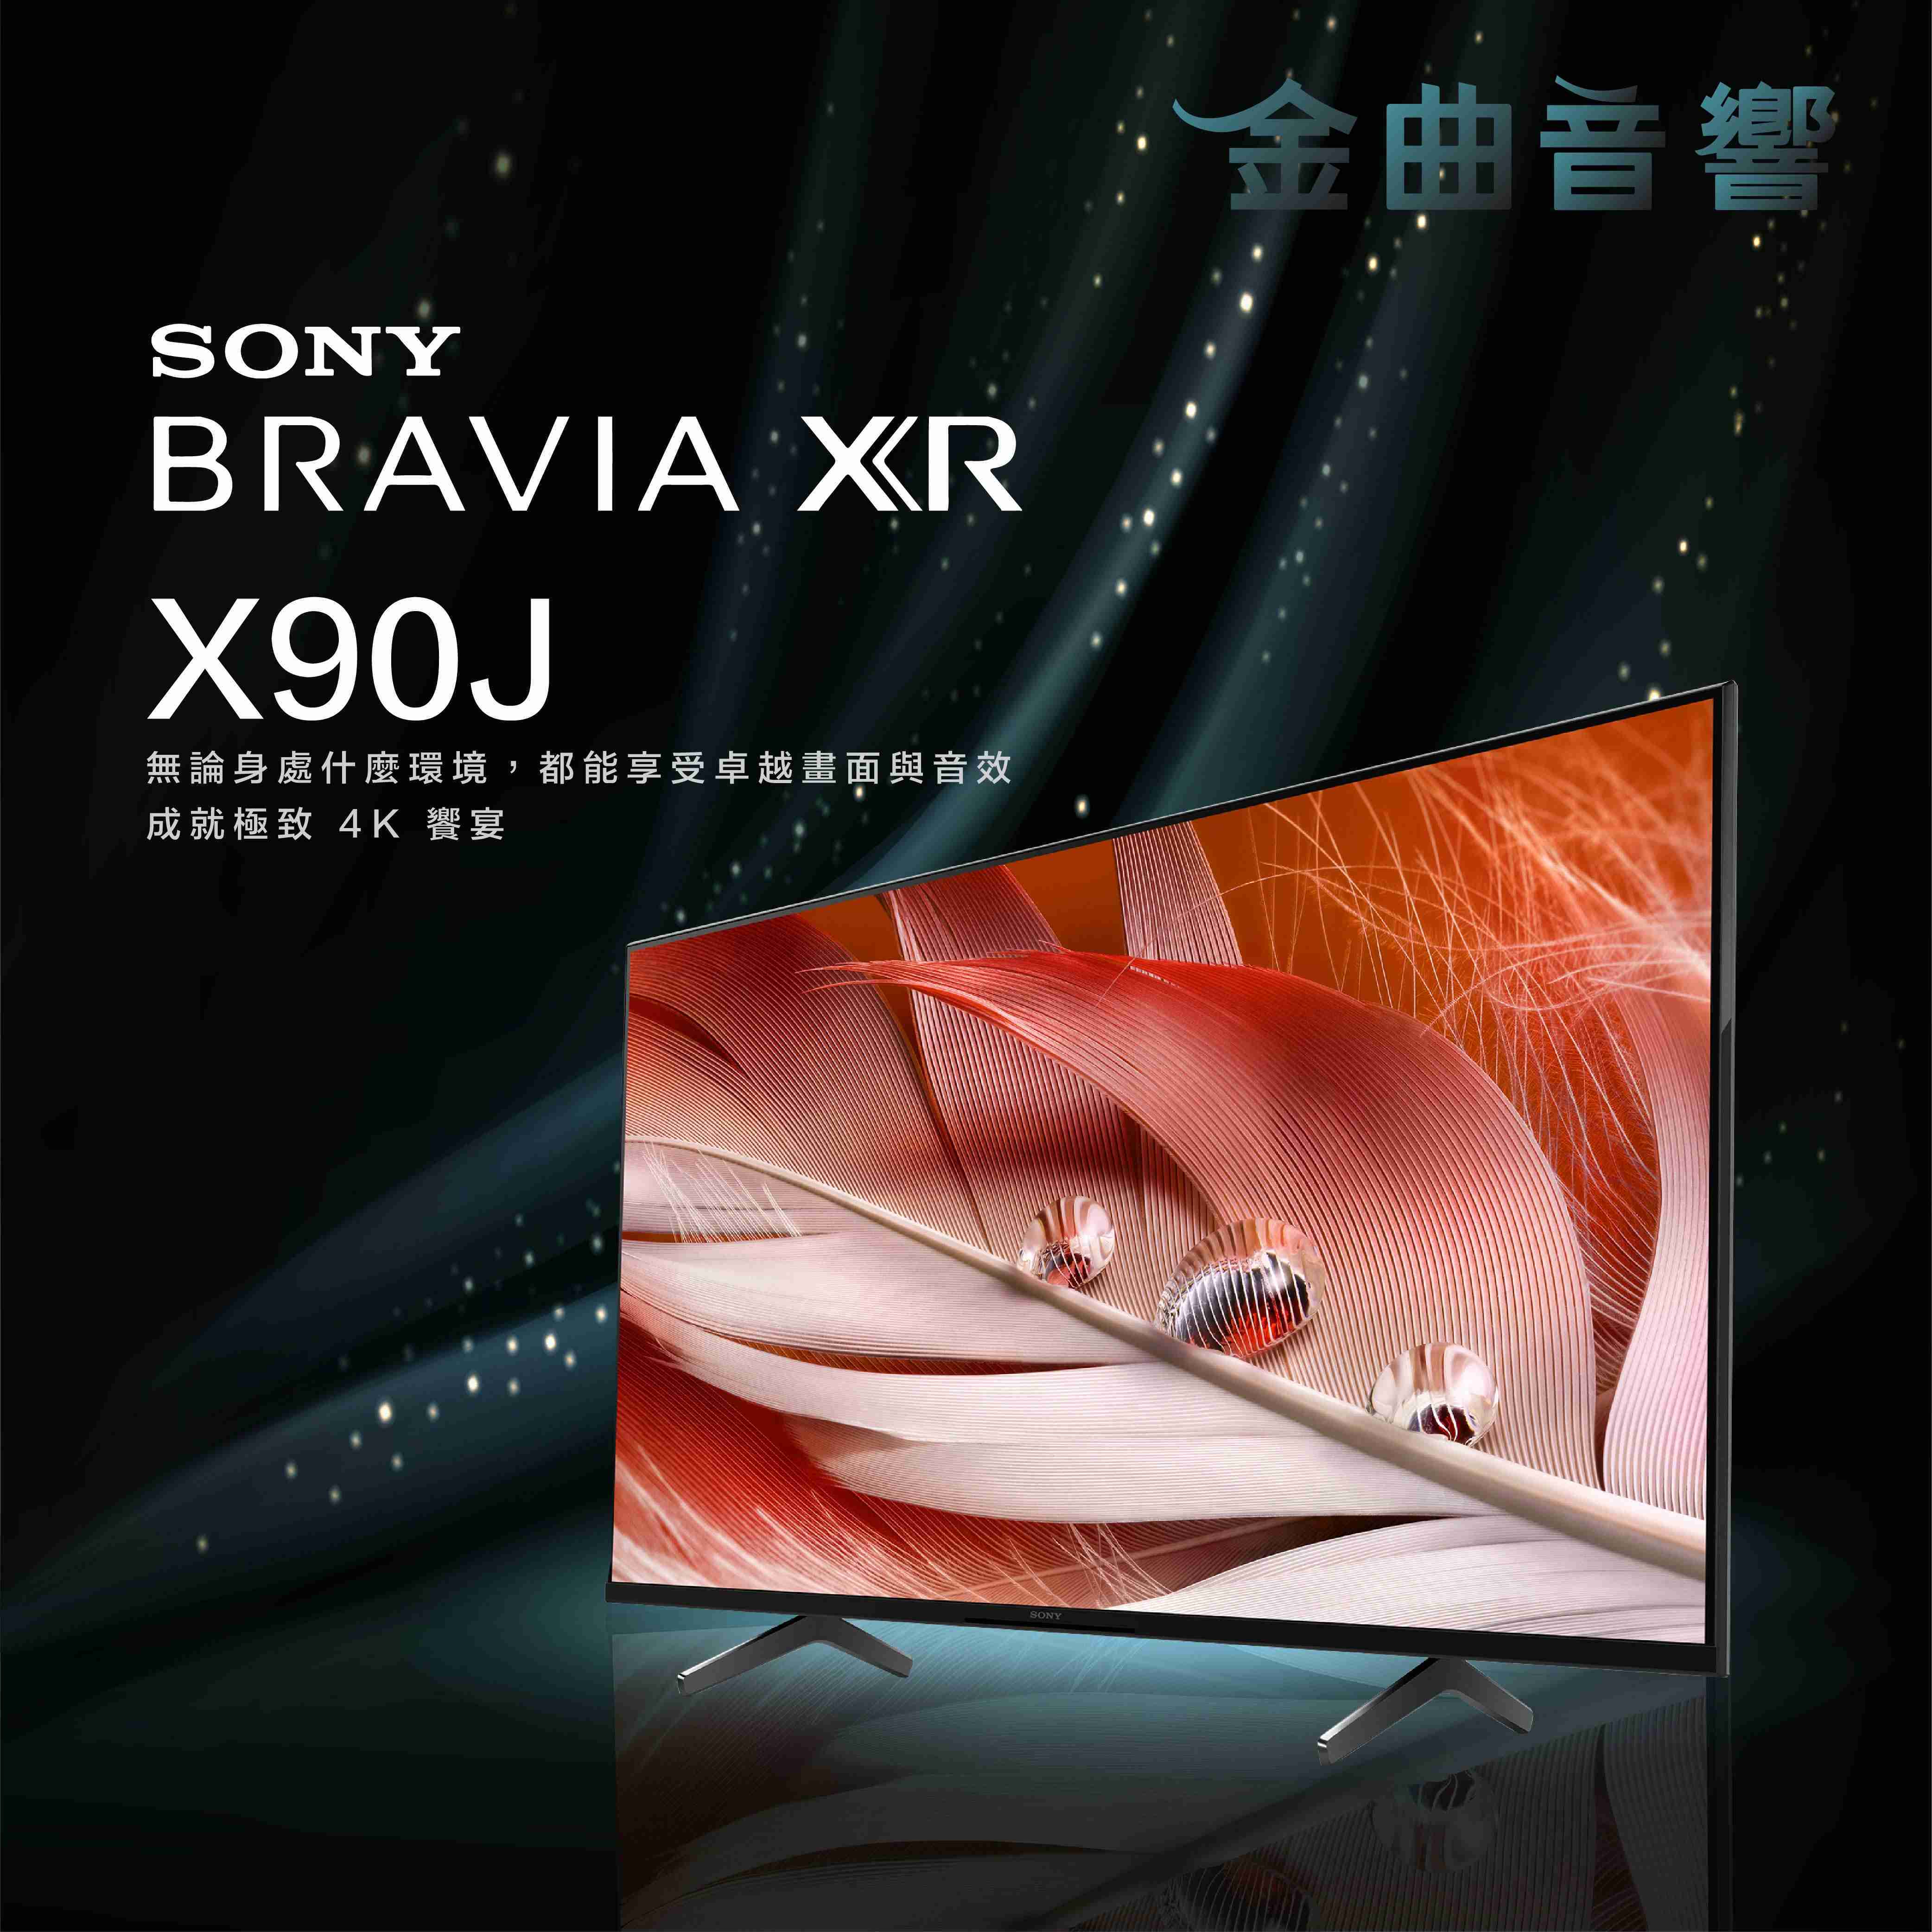 SONY 索尼 65吋 XRM-65X90J 4K 全陣列LED XR 液晶 電視 2021 | 金曲音響